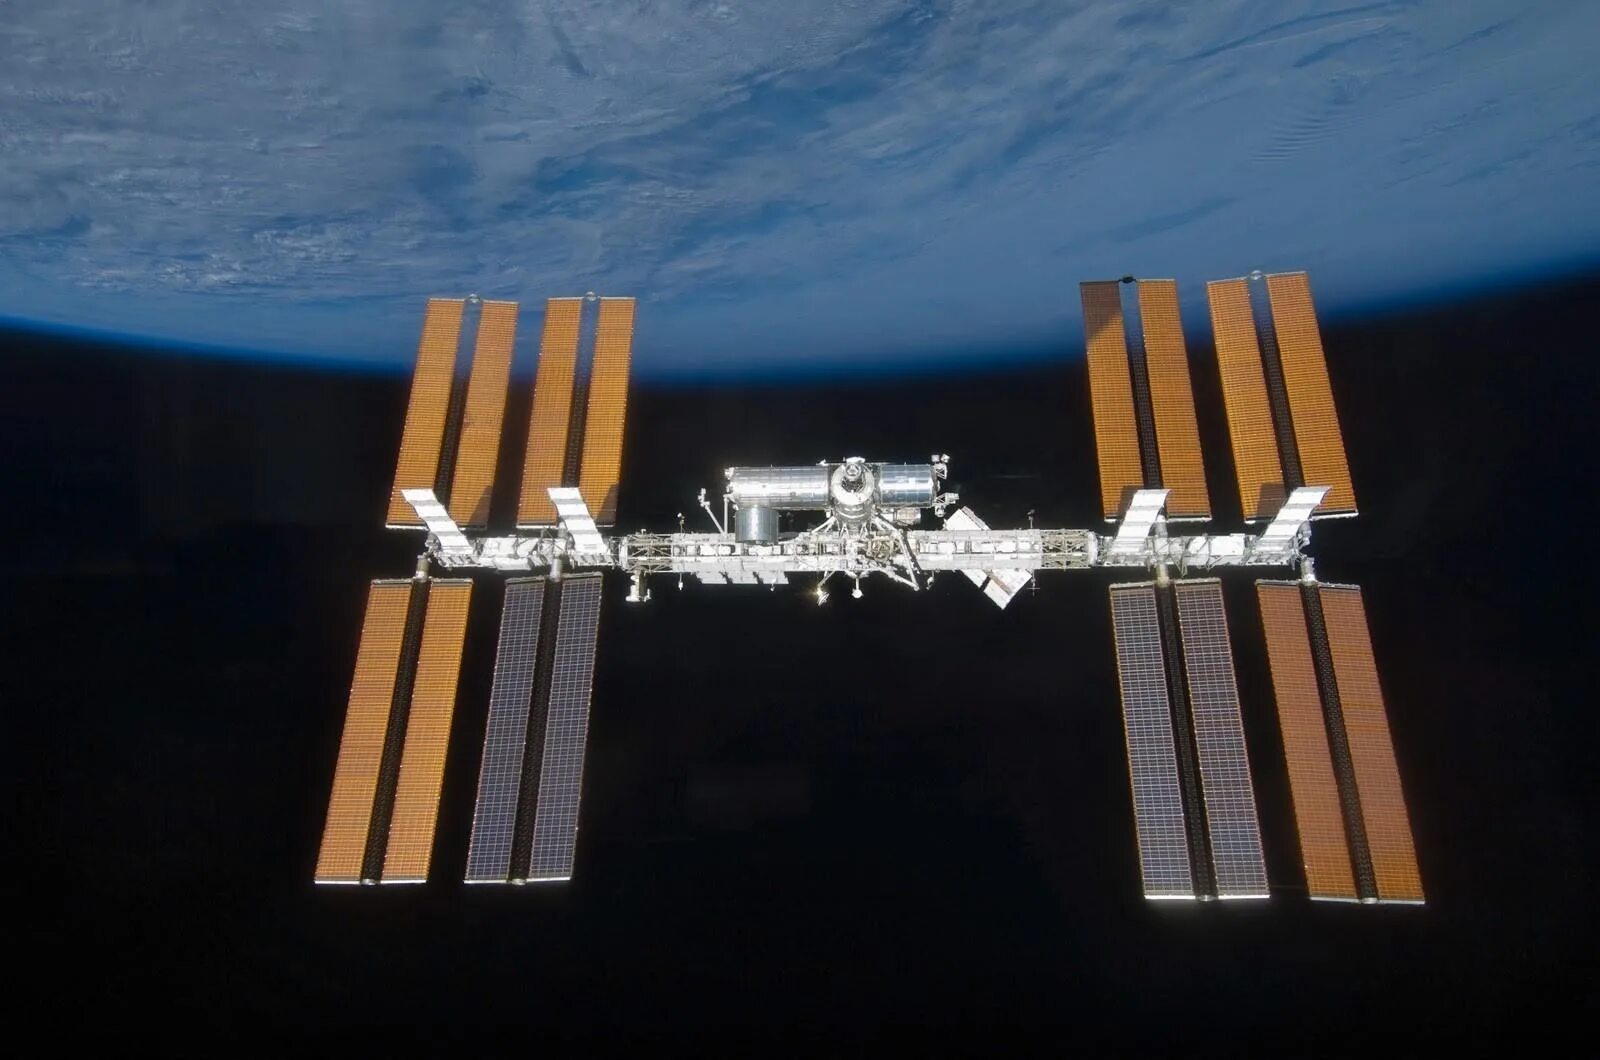 МКС станция Космическая Орбита. Солнечные батареи на МКС. Солнечные панели международной космической станции. Space Shuttle солнечные панели.